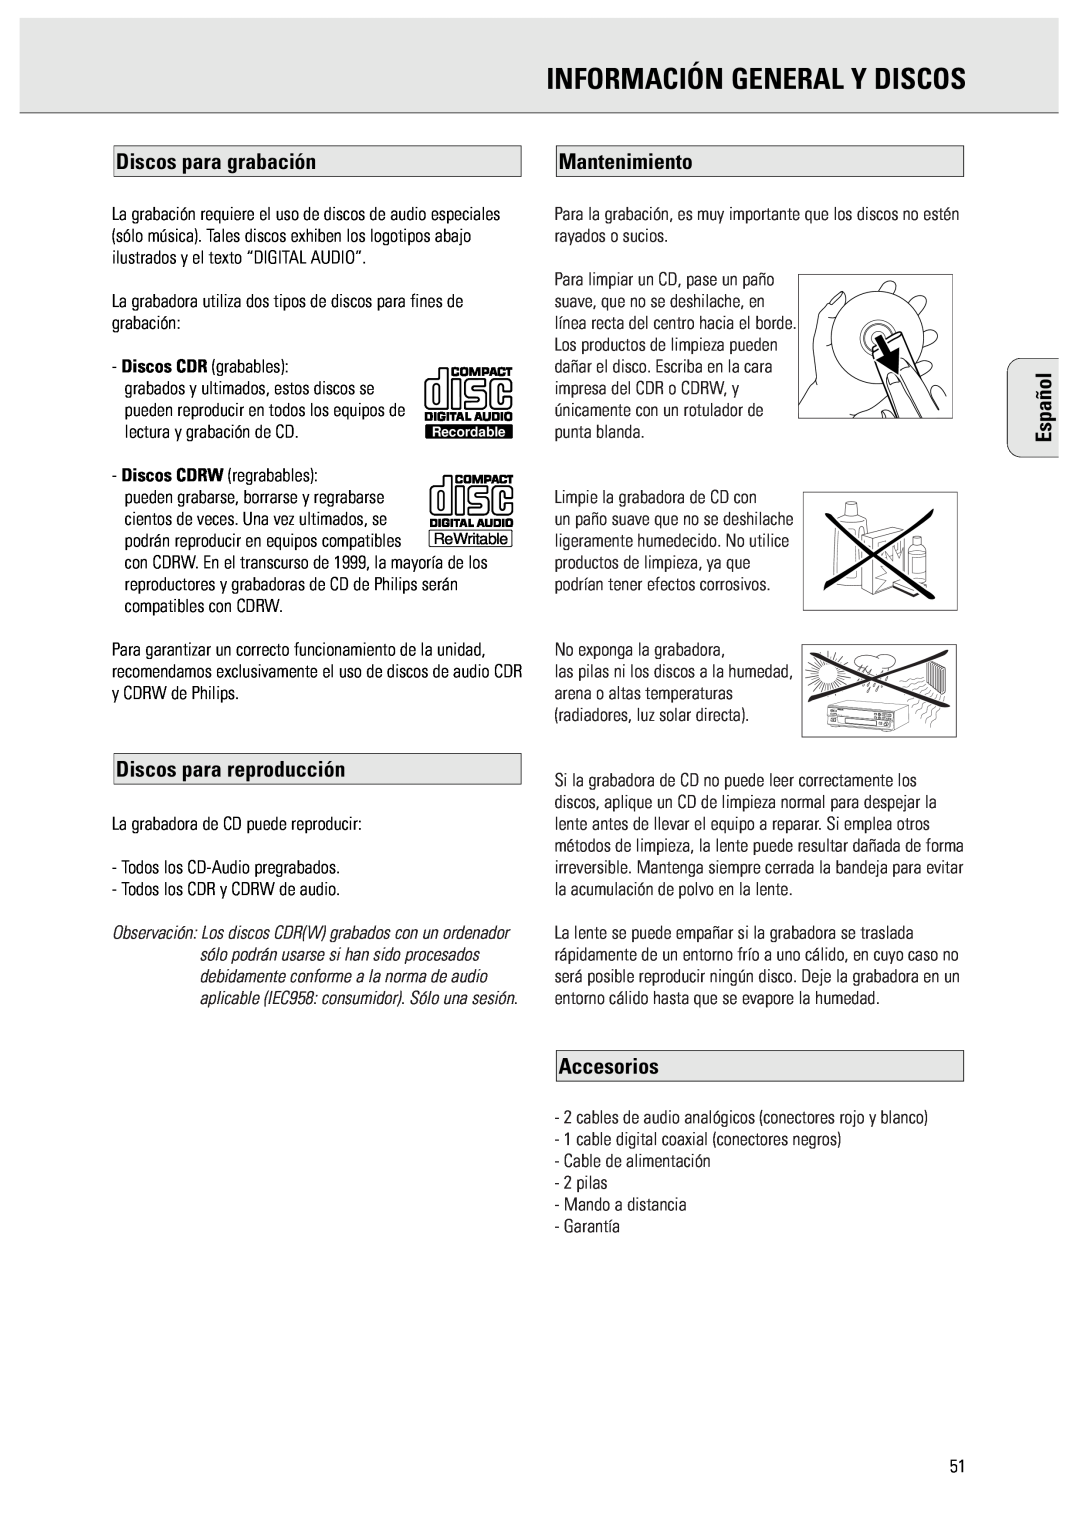 Philips CDR570 manual Información General Y Discos, Discos para grabación, Discos para reproducción, Mantenimiento, Español 